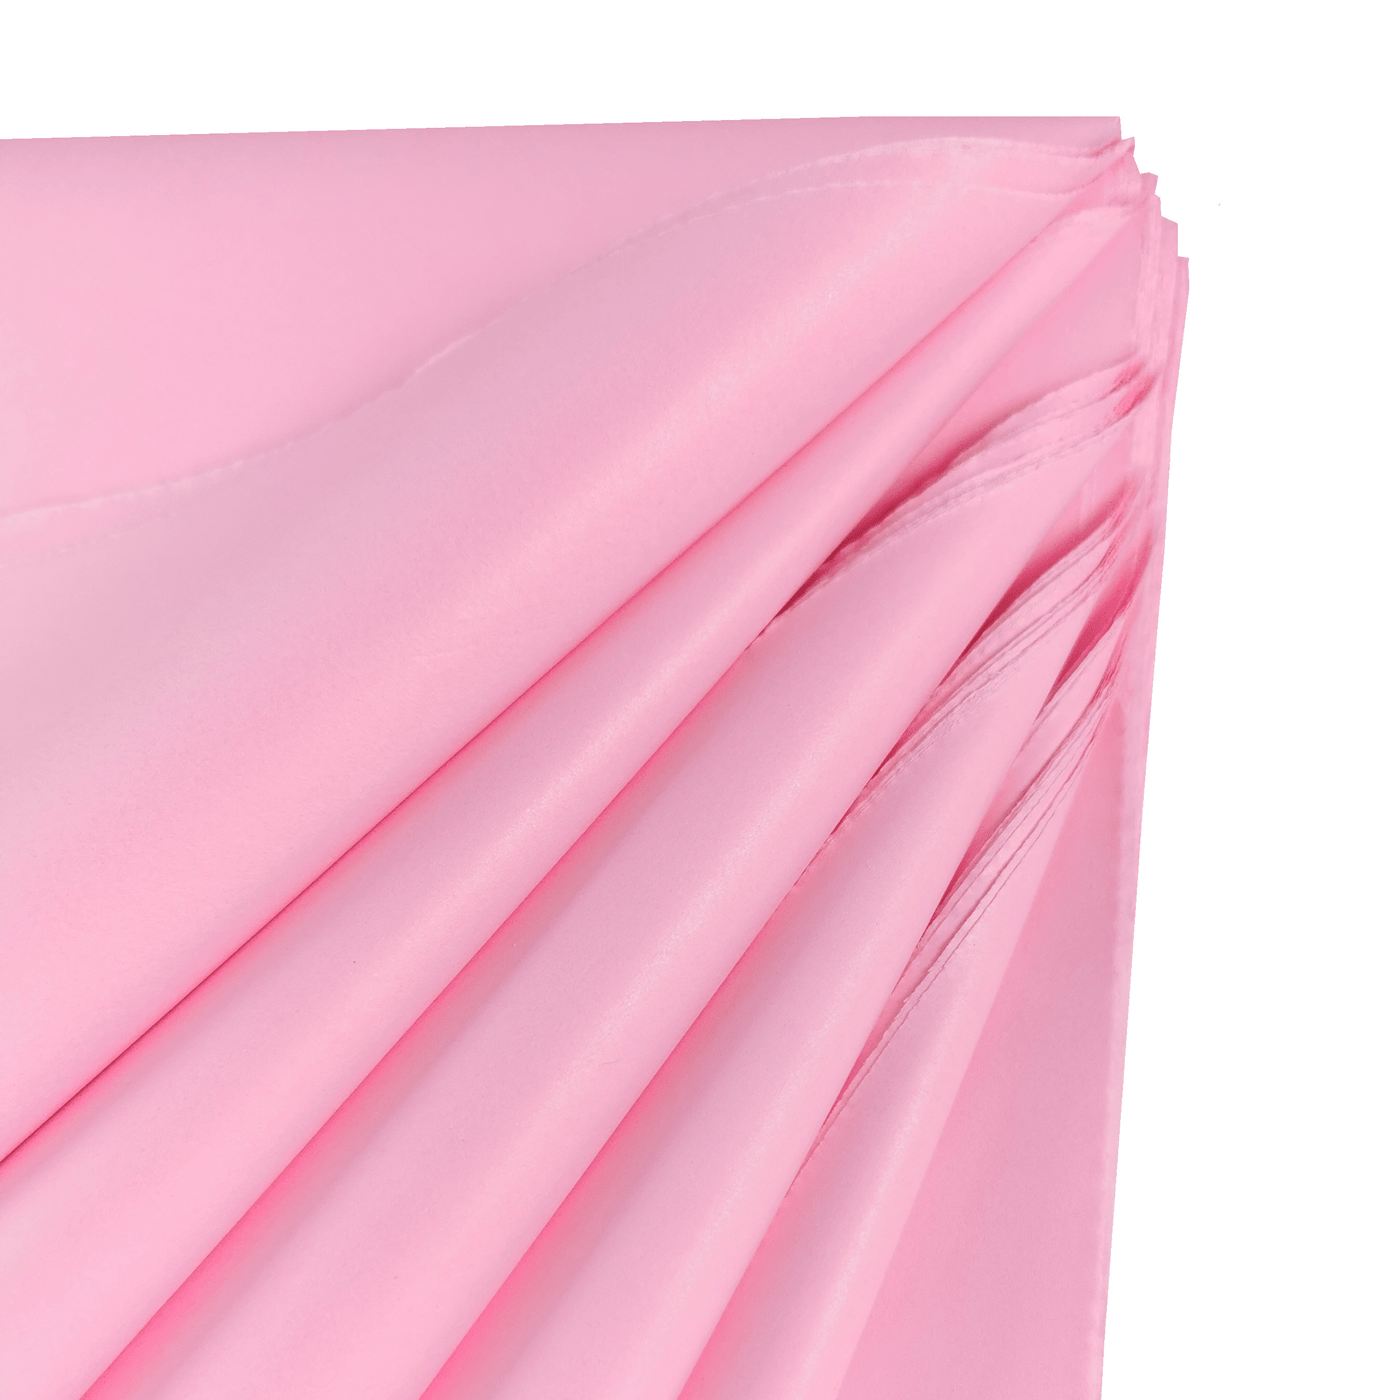 Pastel Pink Tissue Paper